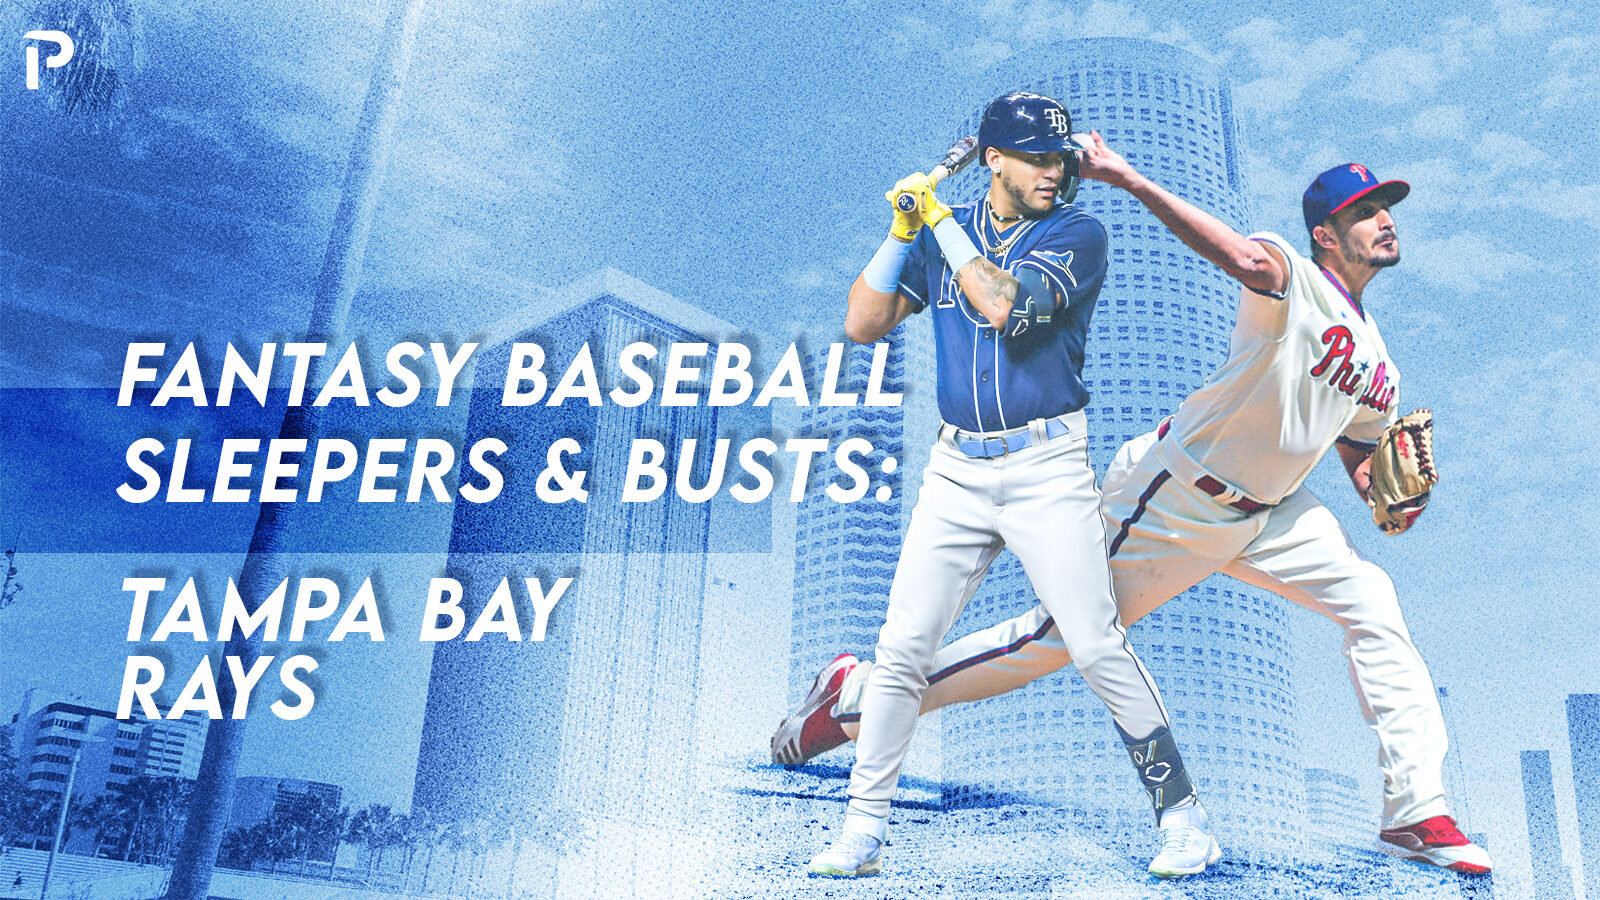 MLB Tampa Bay Rays - Shane Mcclanahan 23 Poster